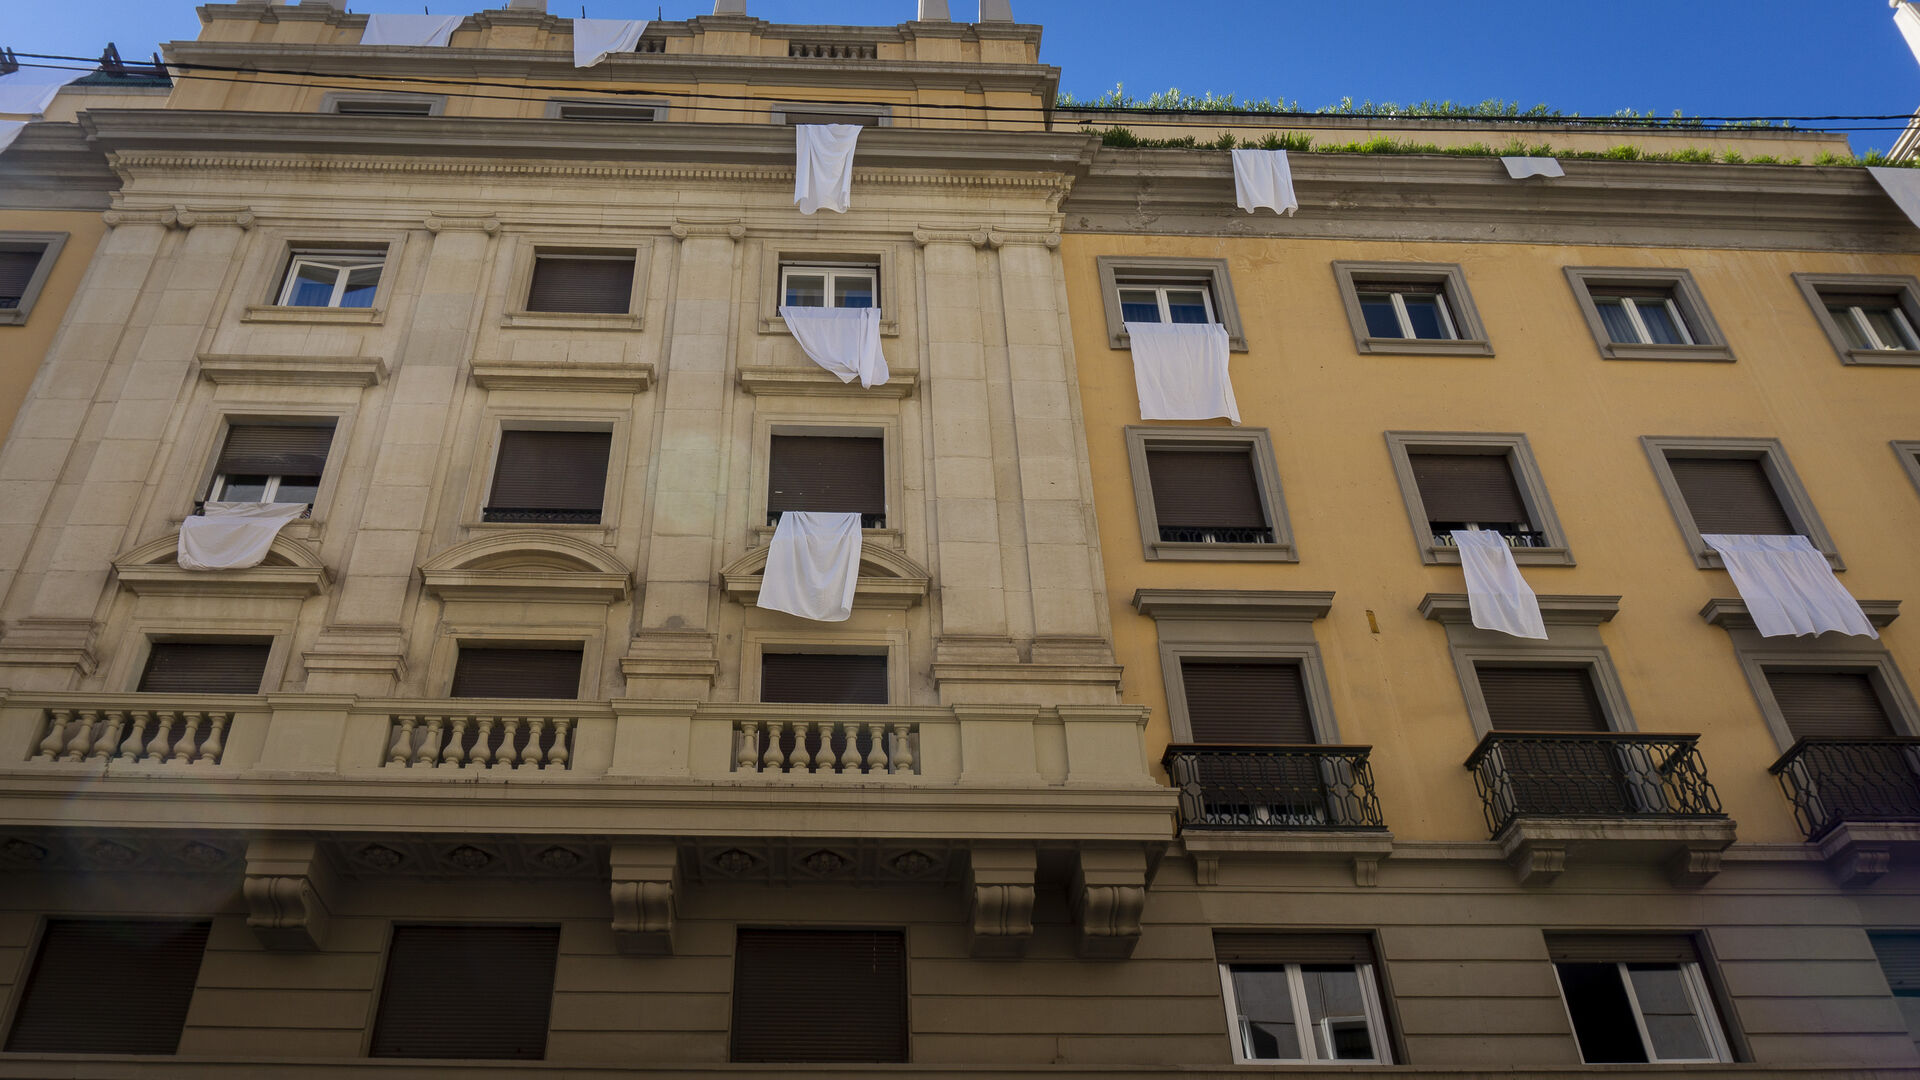 Fotos: Calle Ganivet de Granada vestida con s&aacute;banas blancas como protesta vecinal por los ruidos